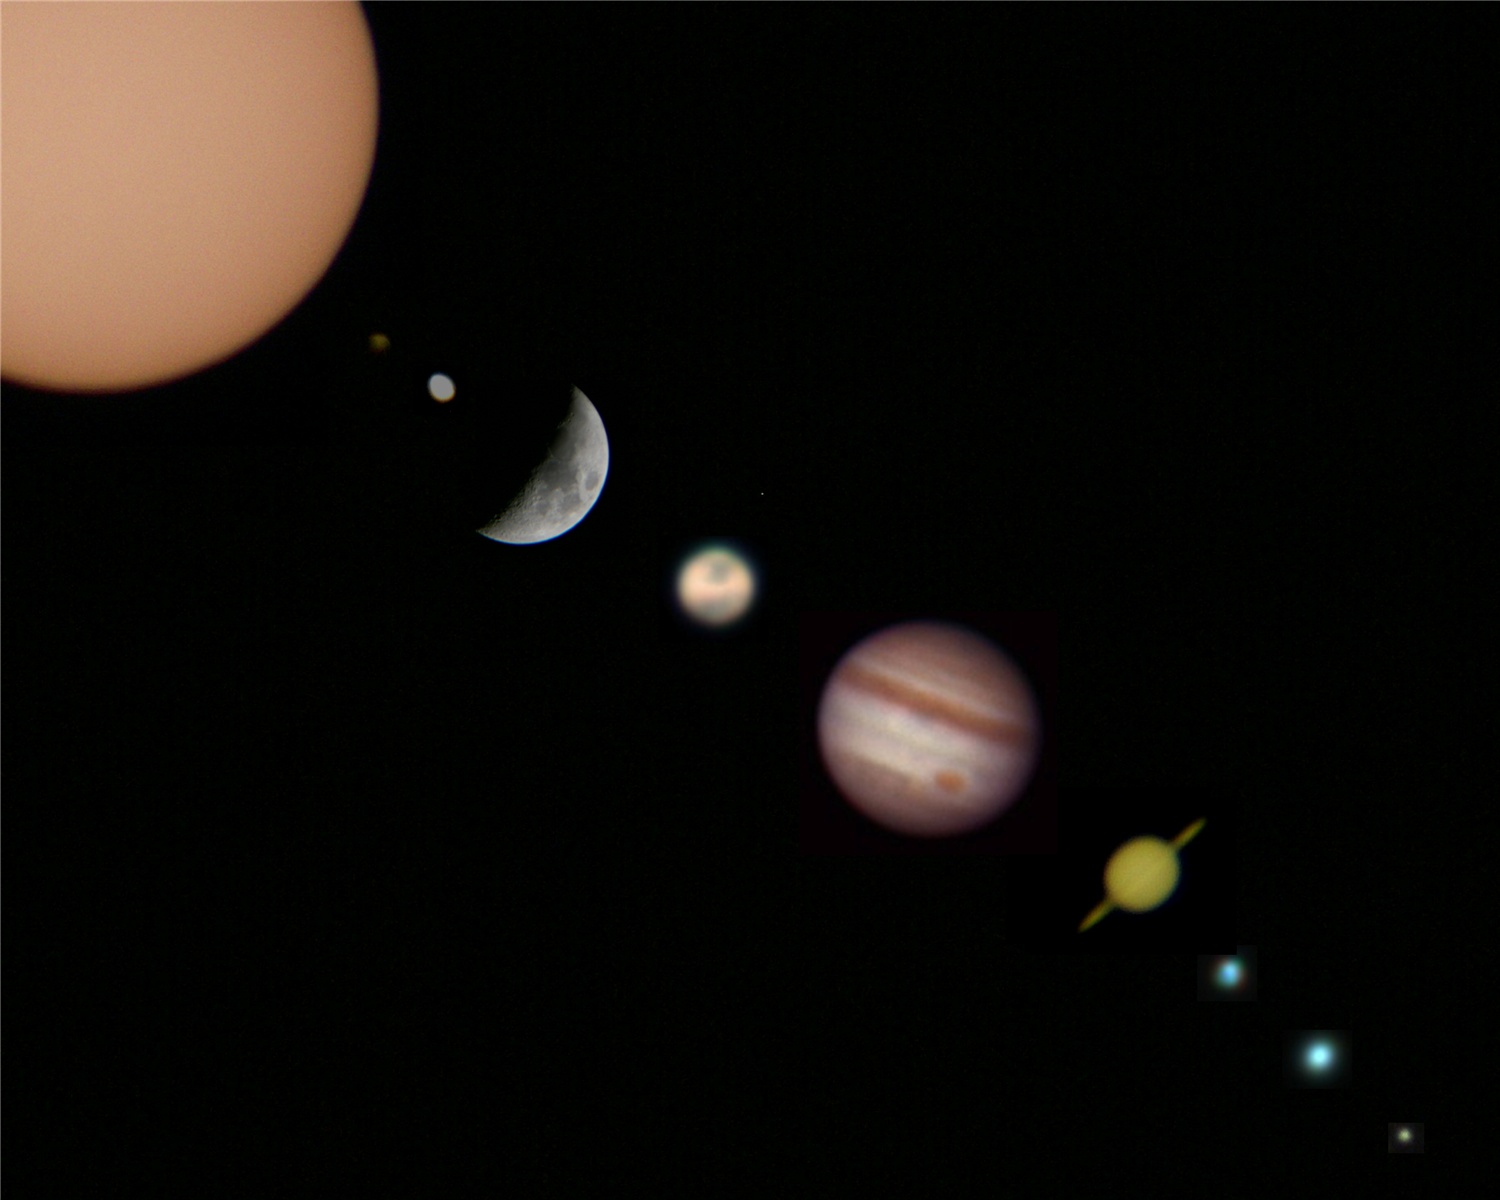 Jupiter vista desde un telescopio